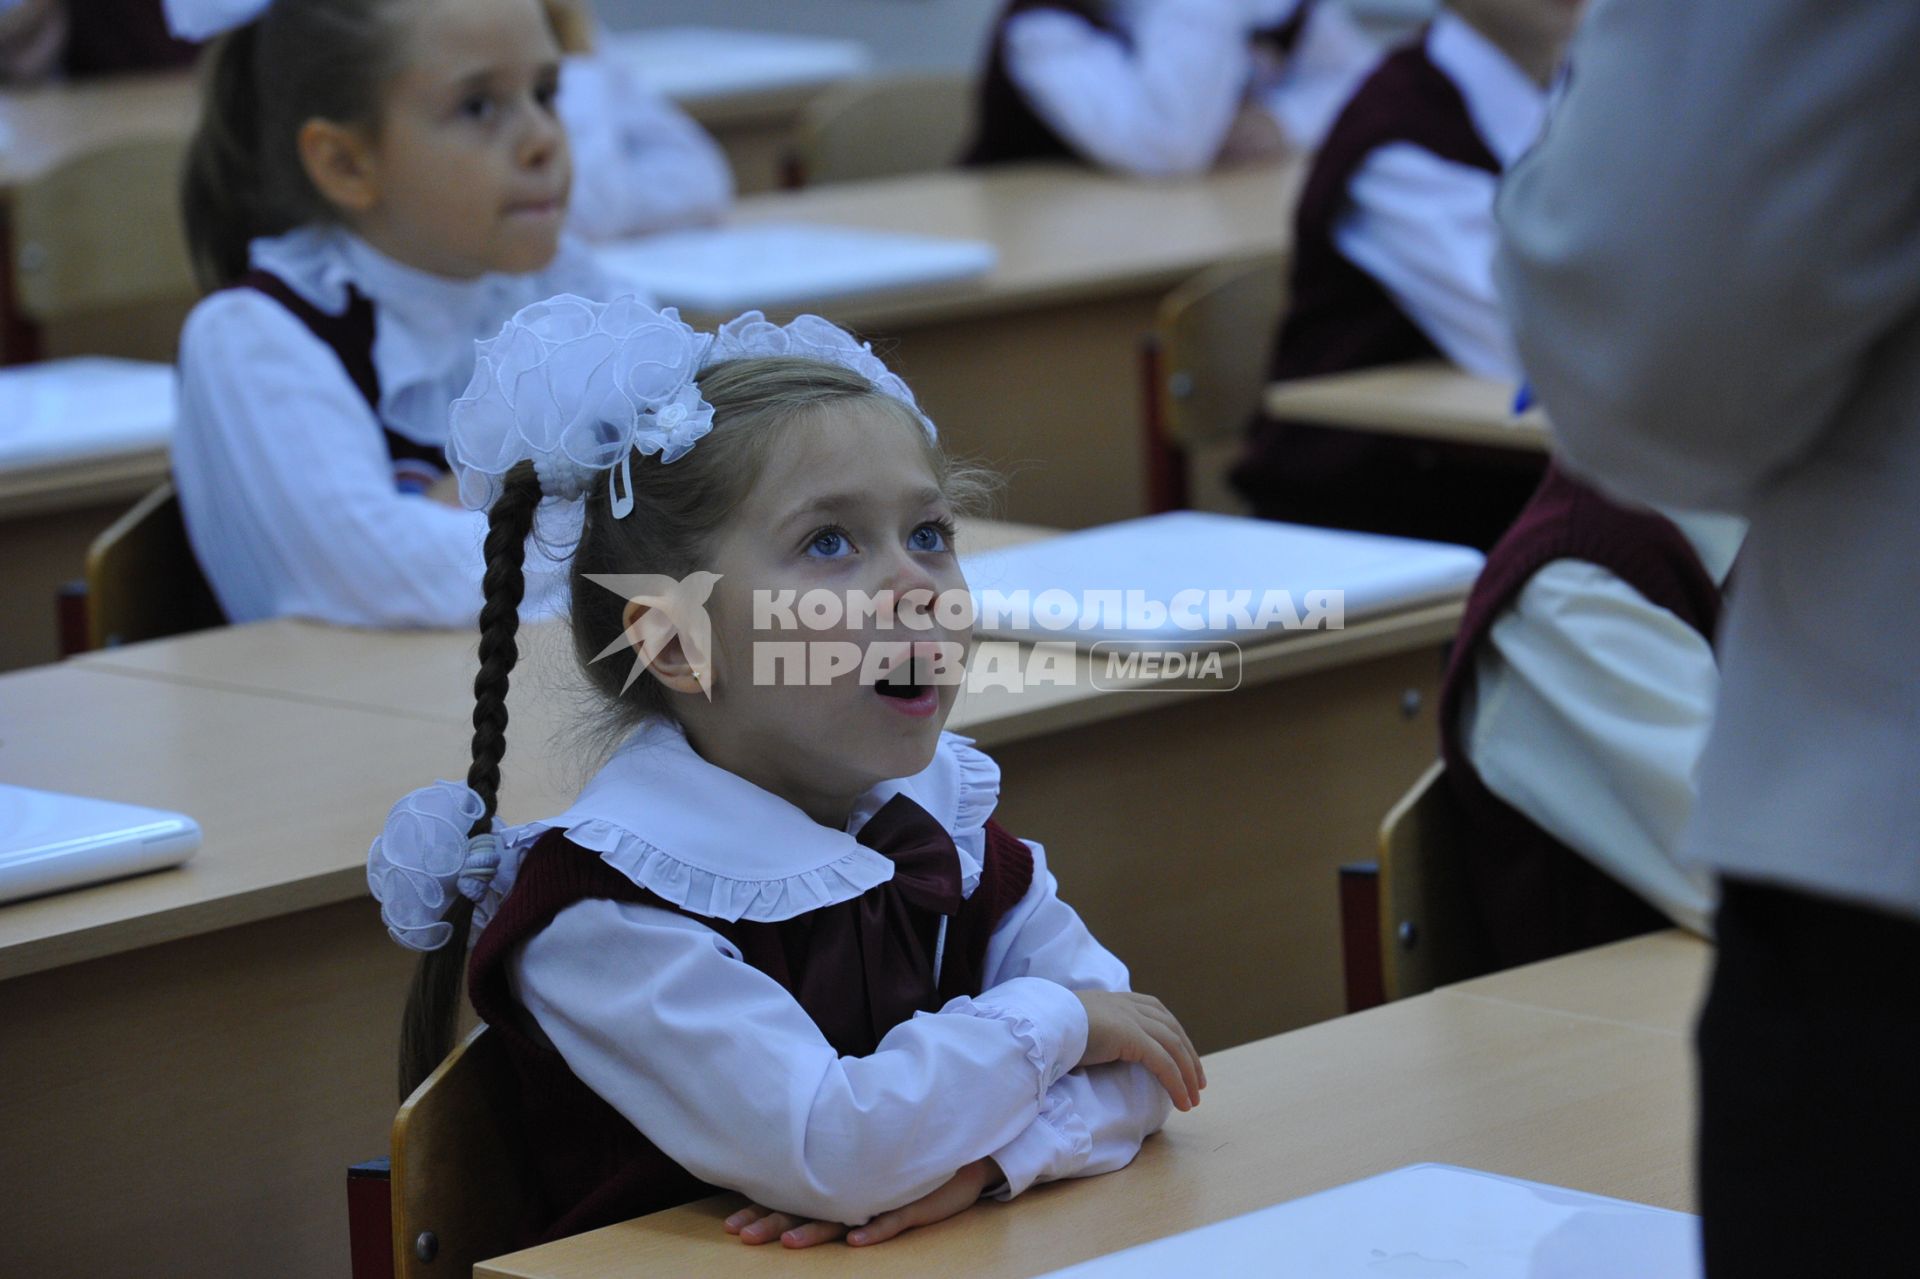 День знаний в российских школах. На снимке: Девочка зевает за партой. Ученица. 1 сентября 2011 года